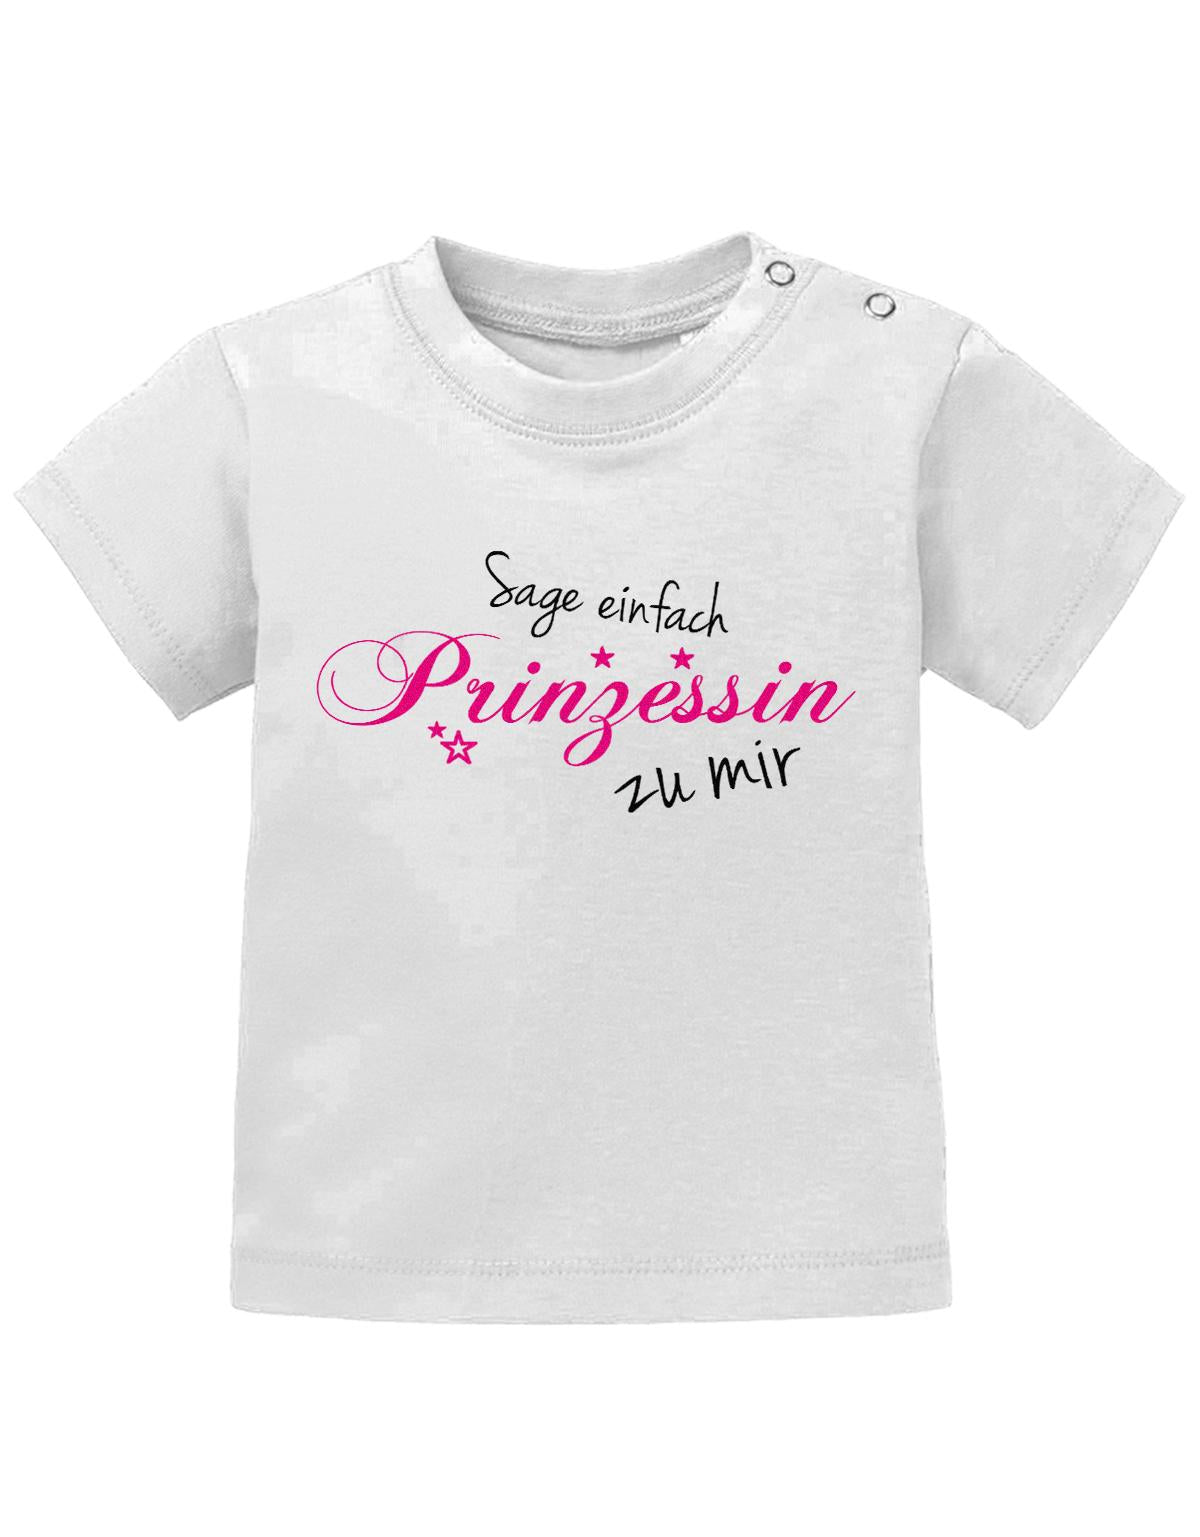 Lustiges Sprüche Baby Shirt Sage einfach Prinzessin zu mir. Weiss